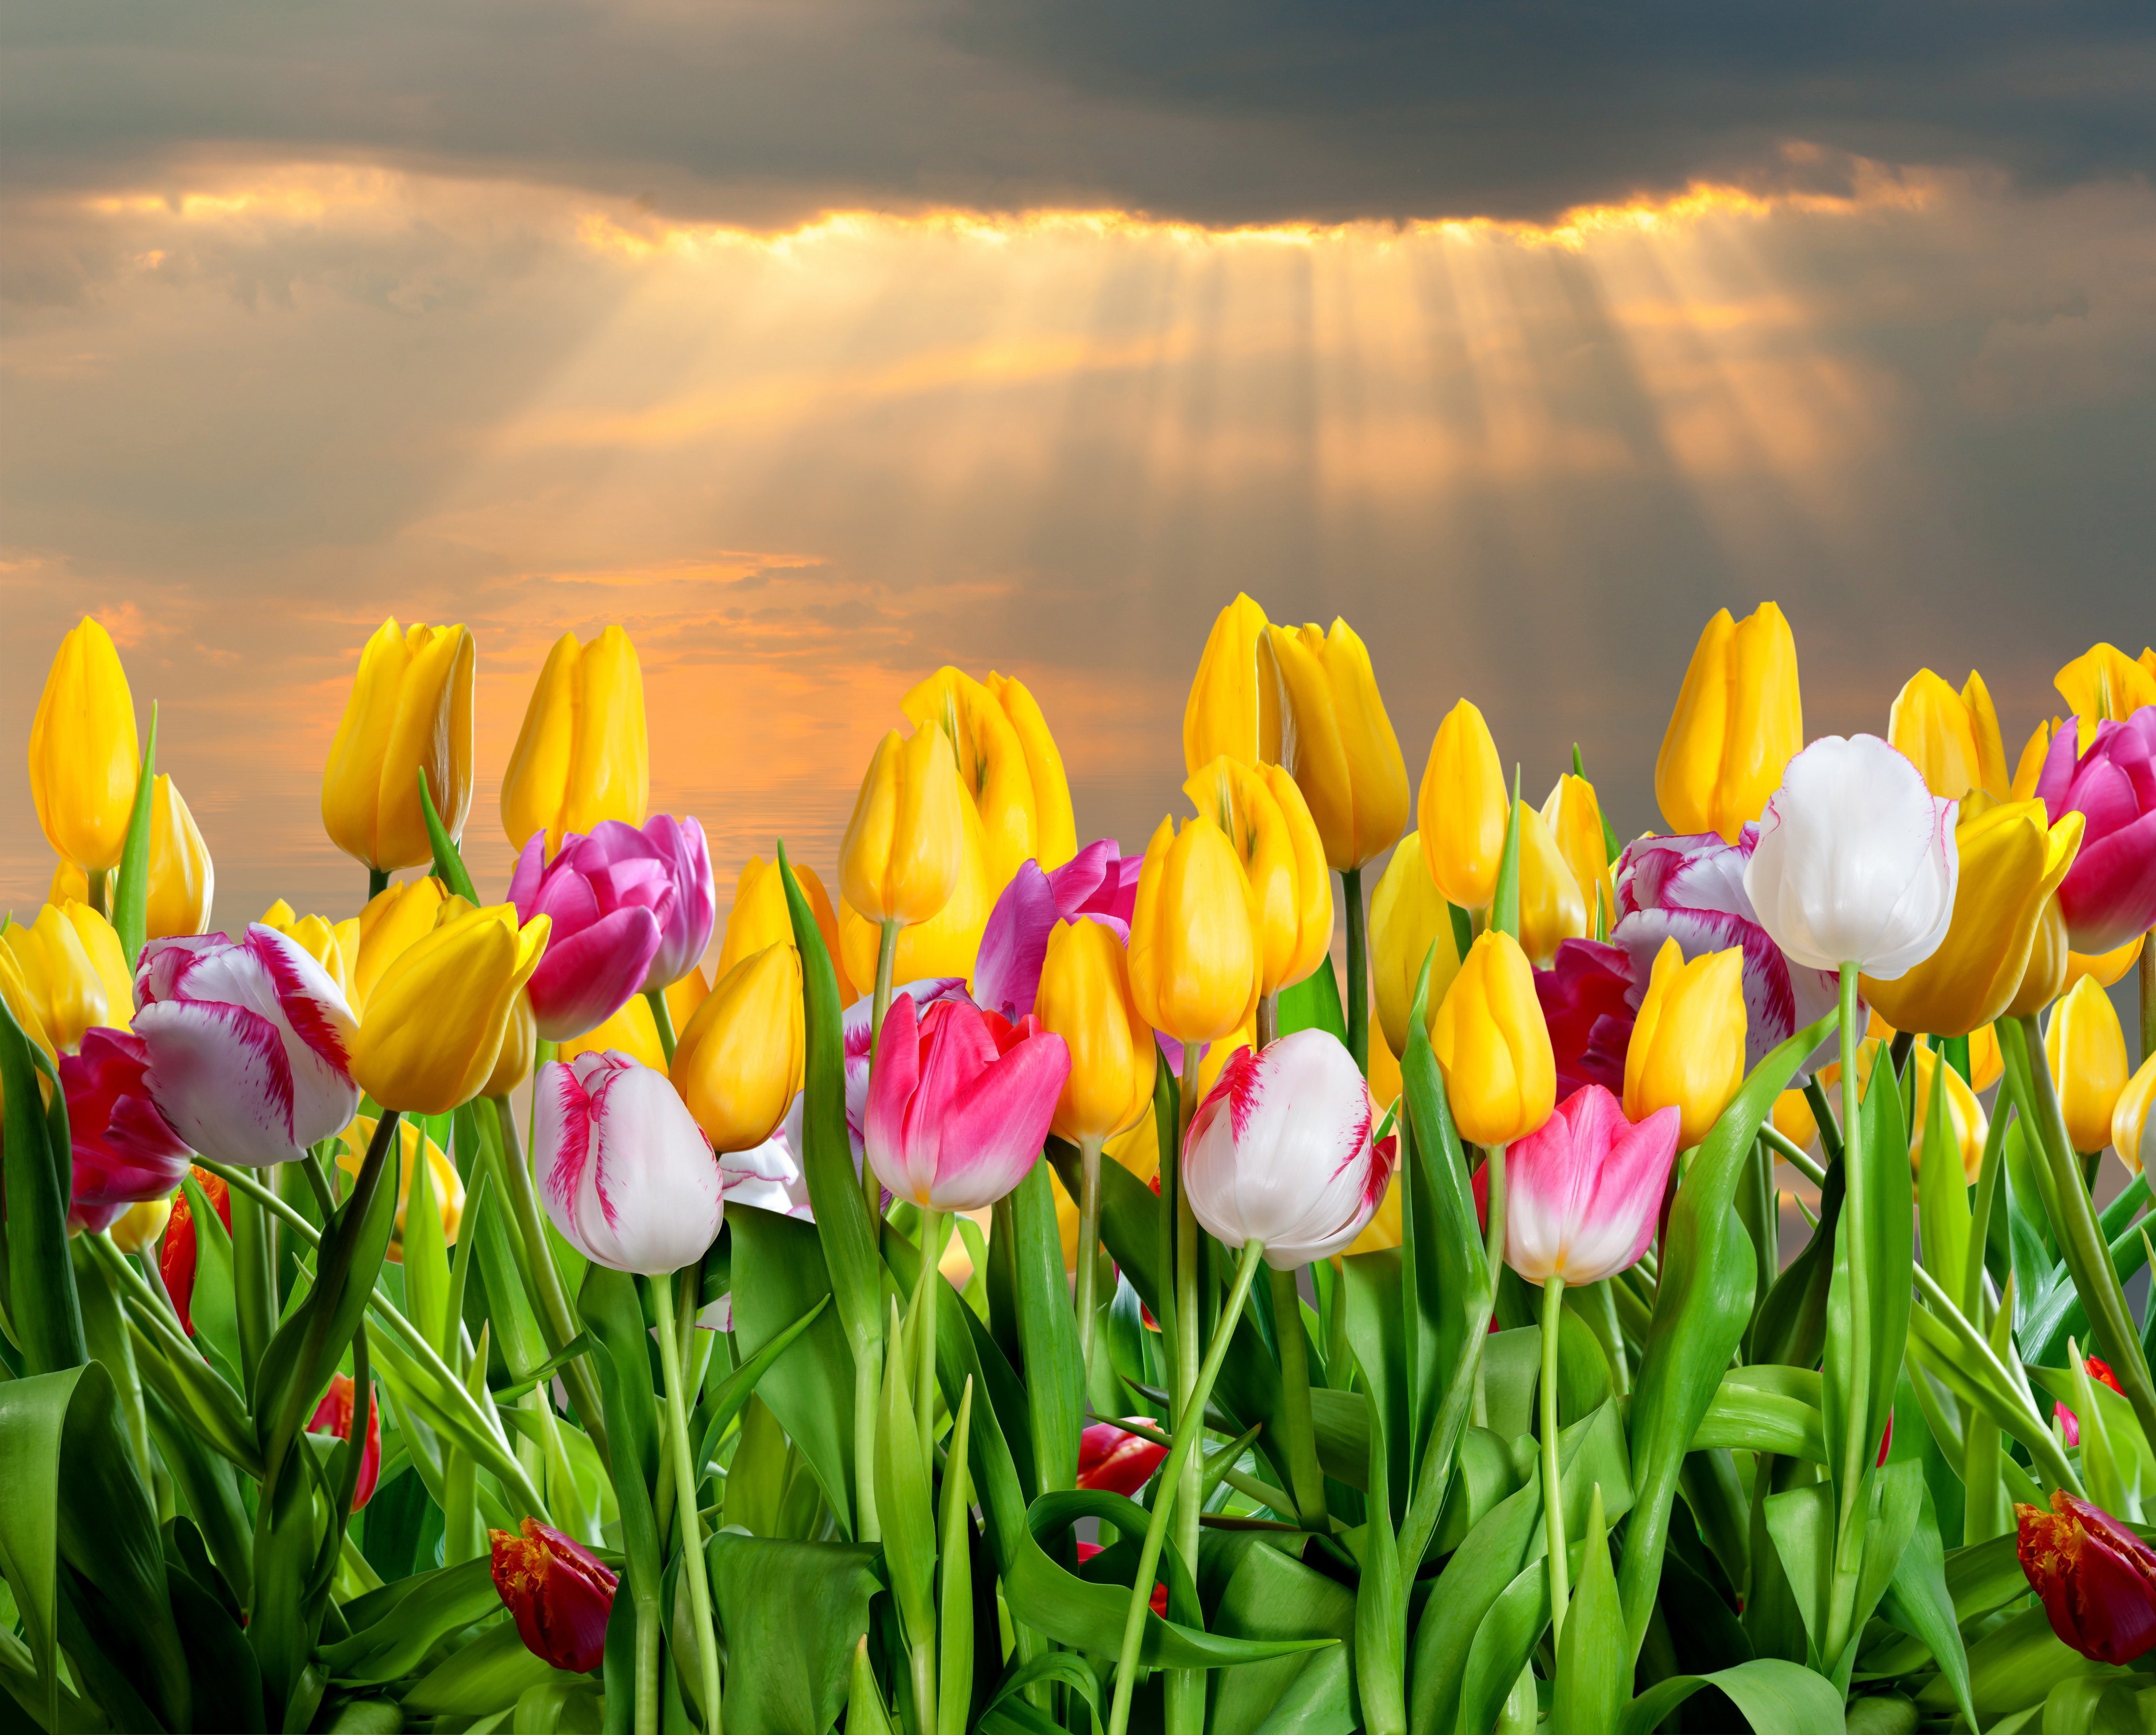 Обои на телефон красивые тюльпаны. Тюльпаны. Яркие весенние цветы. Весенние тюльпаны. Тюльпаны разноцветные.